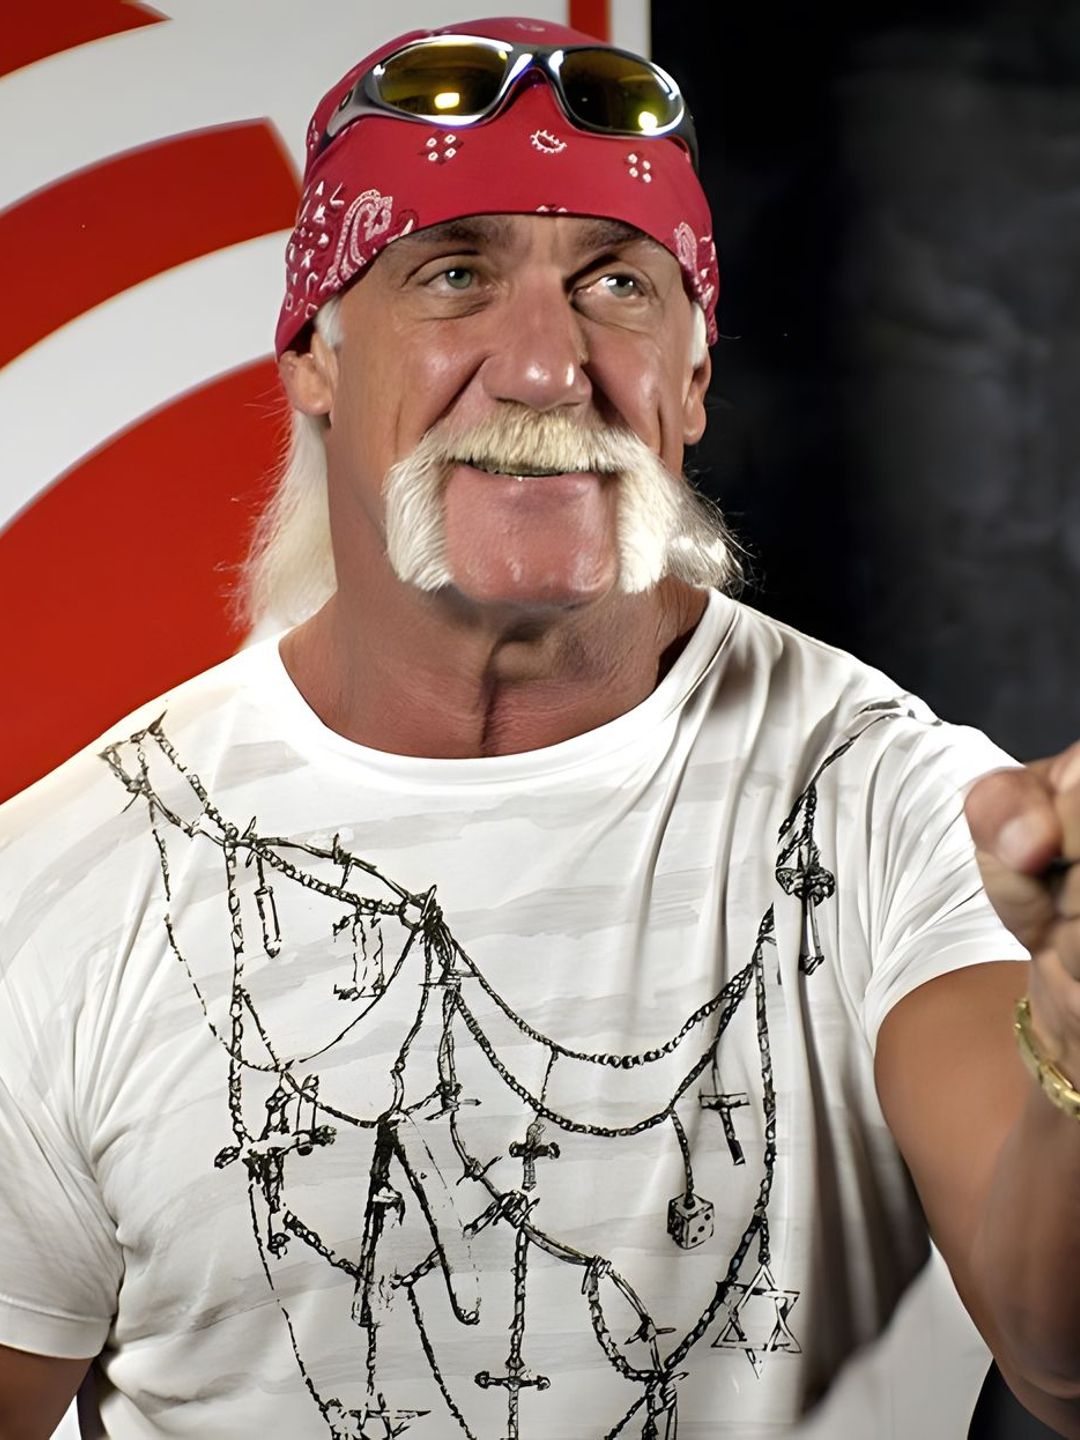 Hulk Hogan story of success